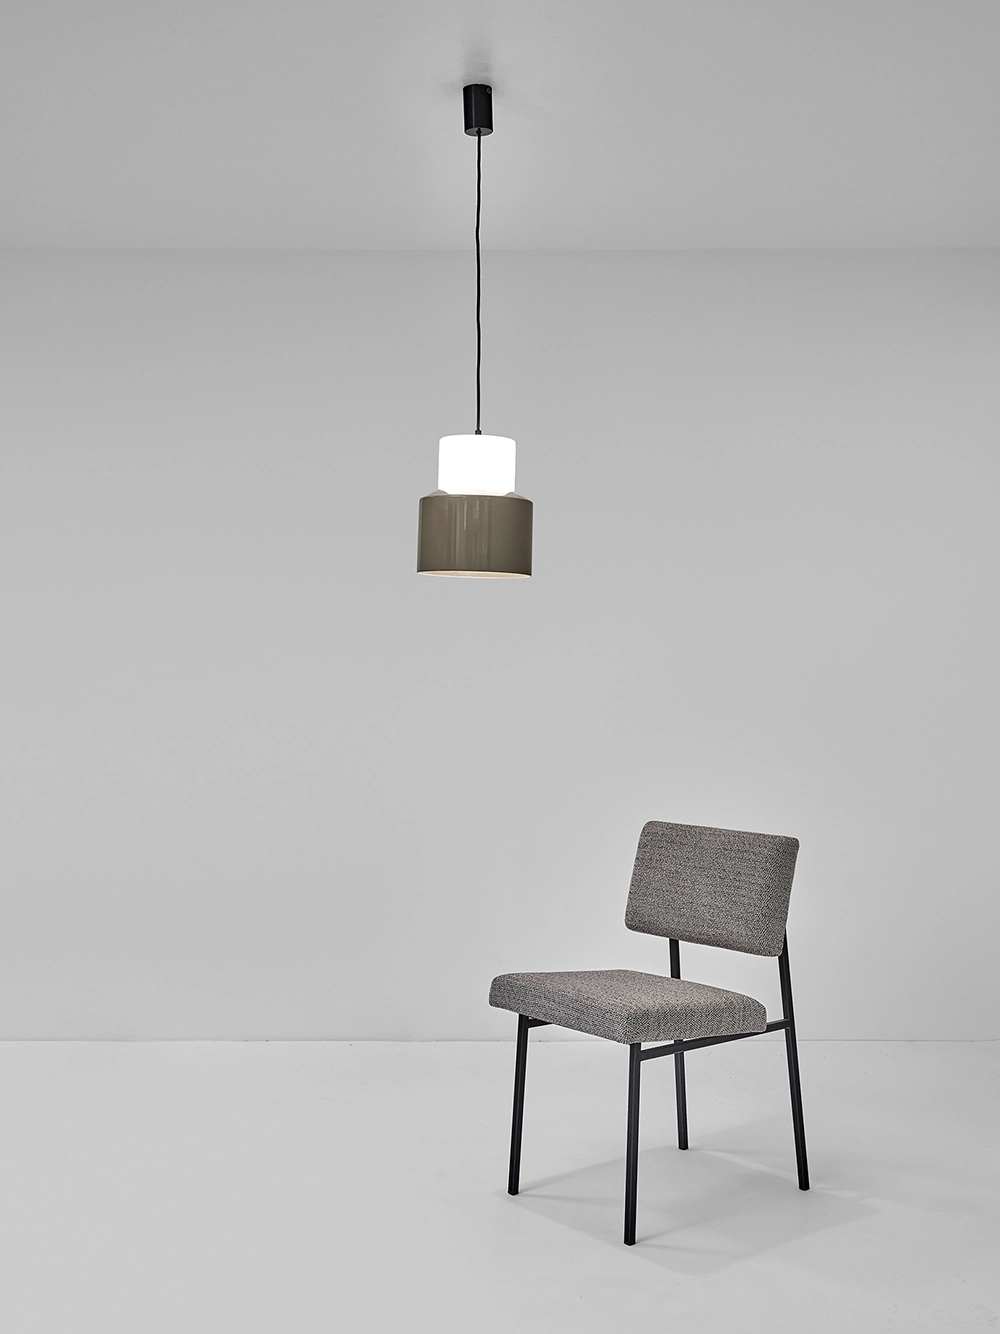 2093 - Sergio Asti - Pendant light - Galerie kreo